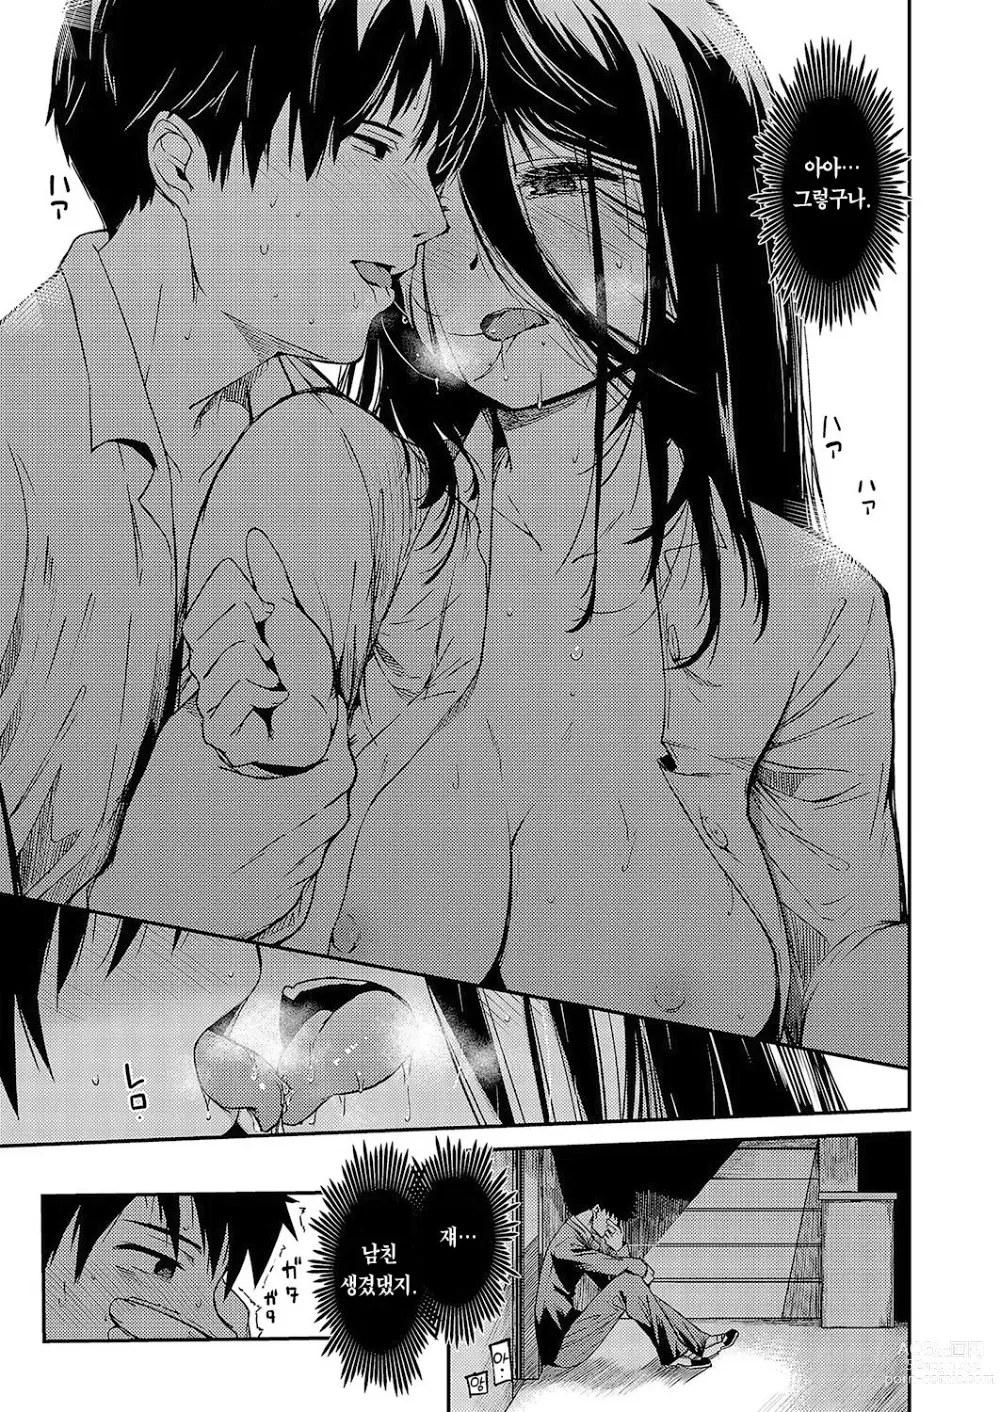 Page 8 of manga 내가 먼저 좋아했다면 다시 빼앗아라!